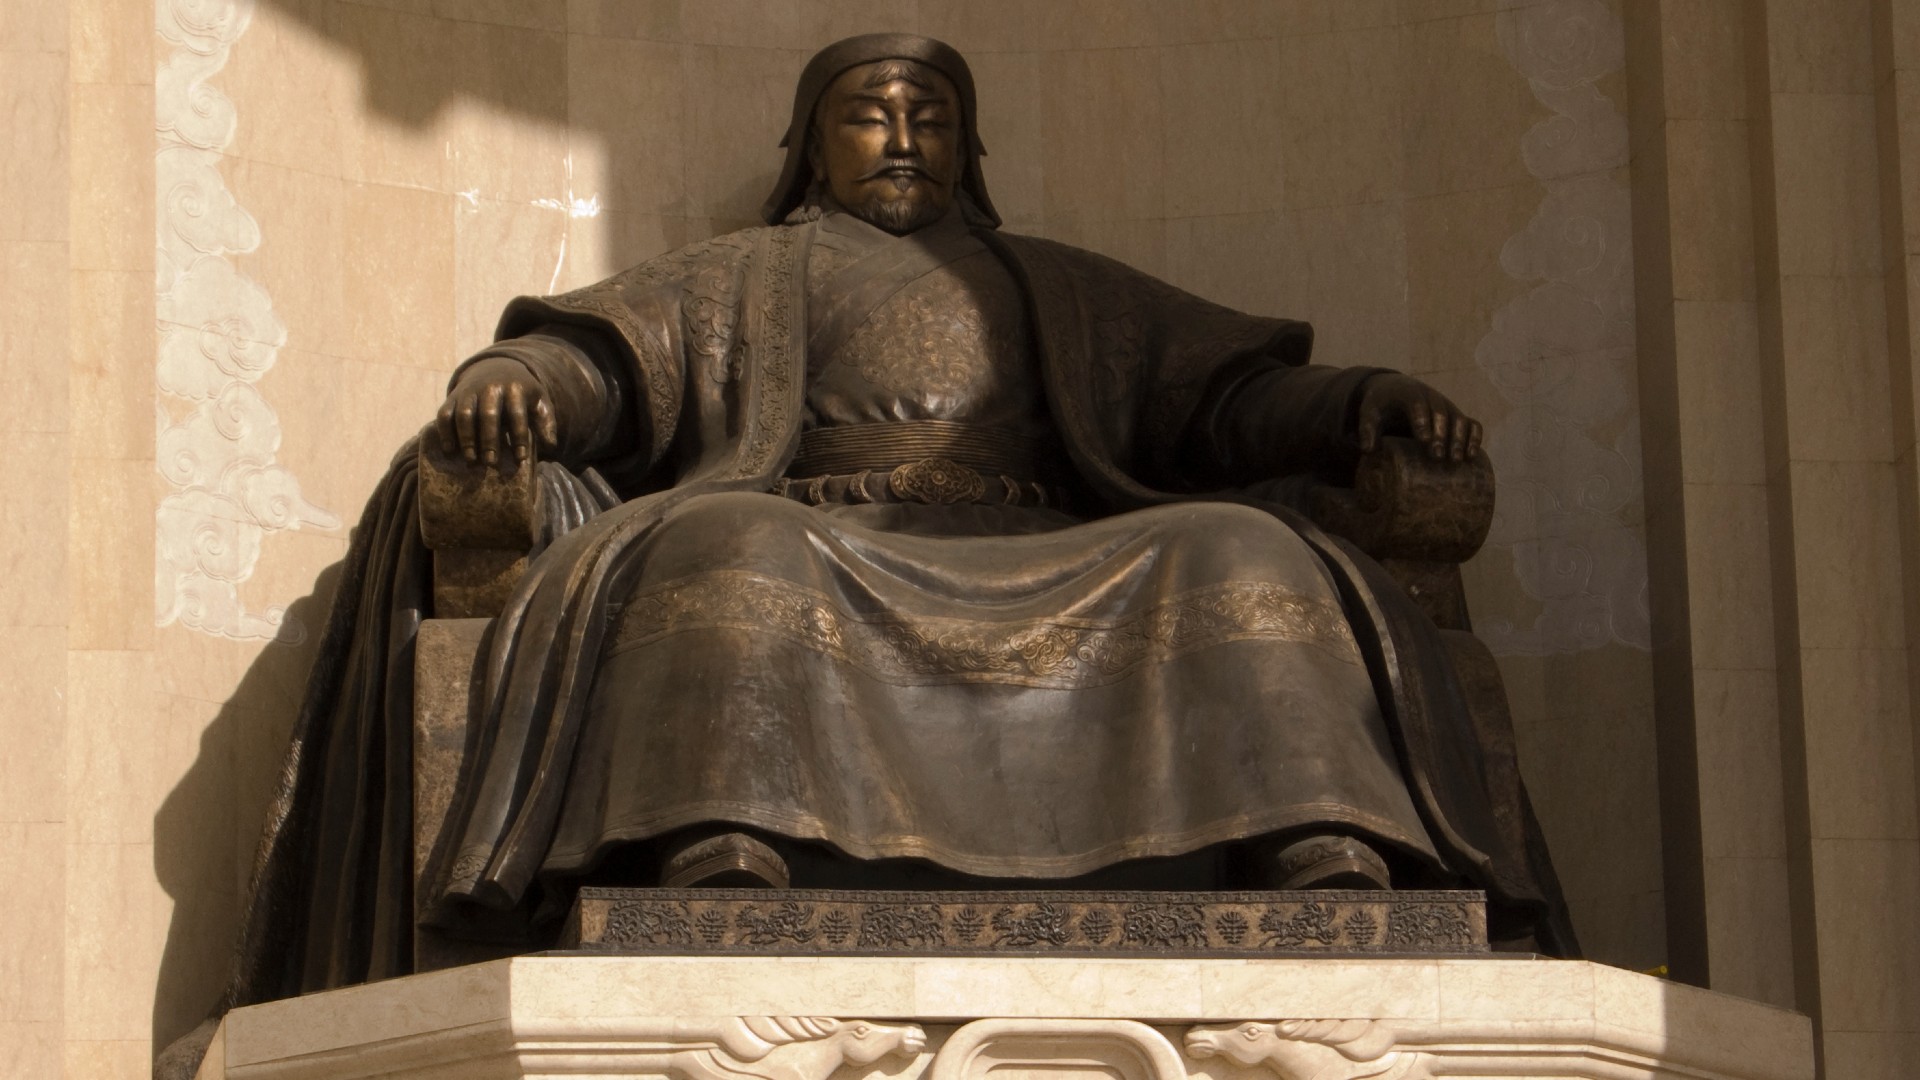 Monumental estatua pública de Genghis Khan que domina la plaza central de Ulan Bator, el líder y guerrero que todavía es muy respetado en Mongolia.